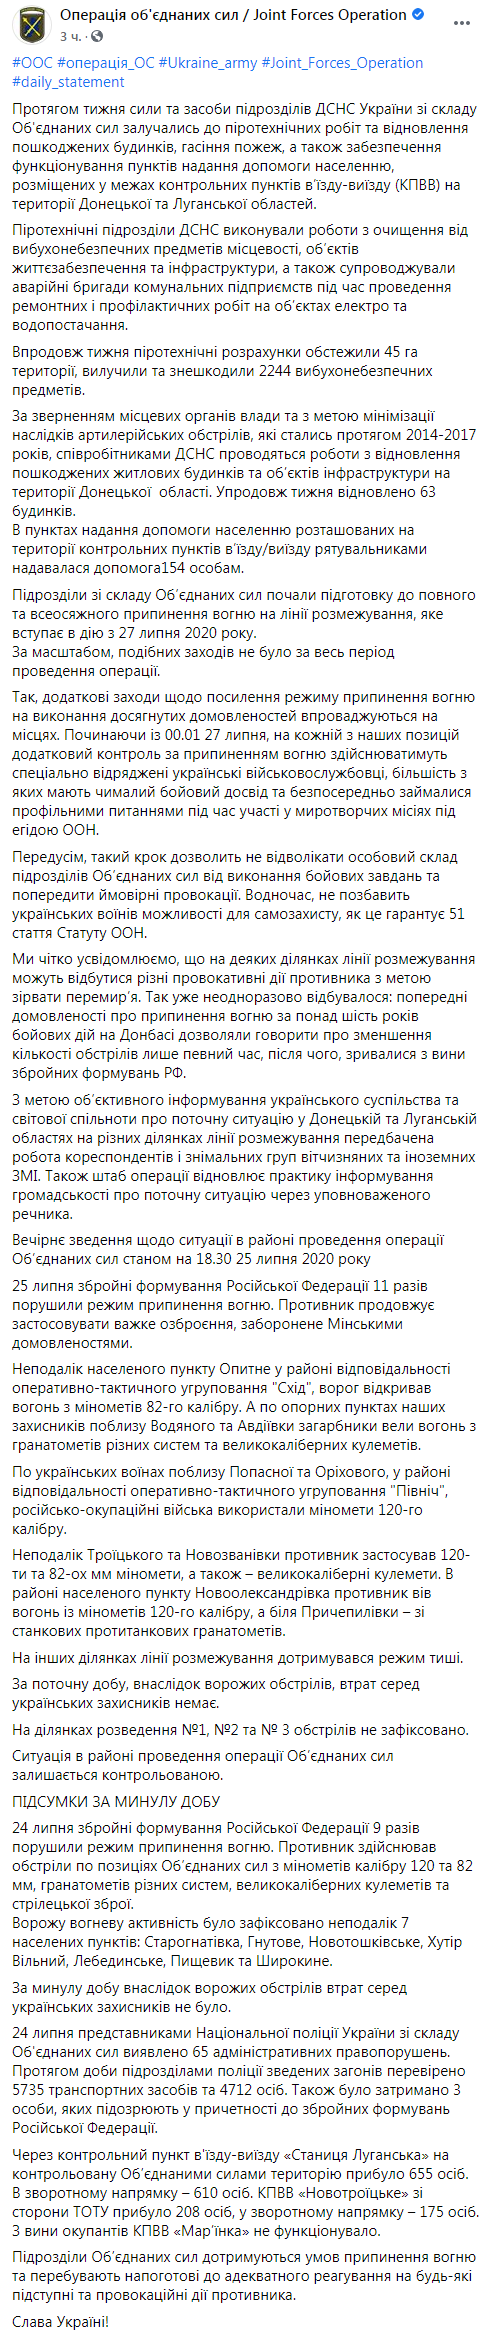 Следить за соблюдением режима полного прекращения огня на Донбассе будут контролеры. Скриншот: Штаб ООС в Фейсбук